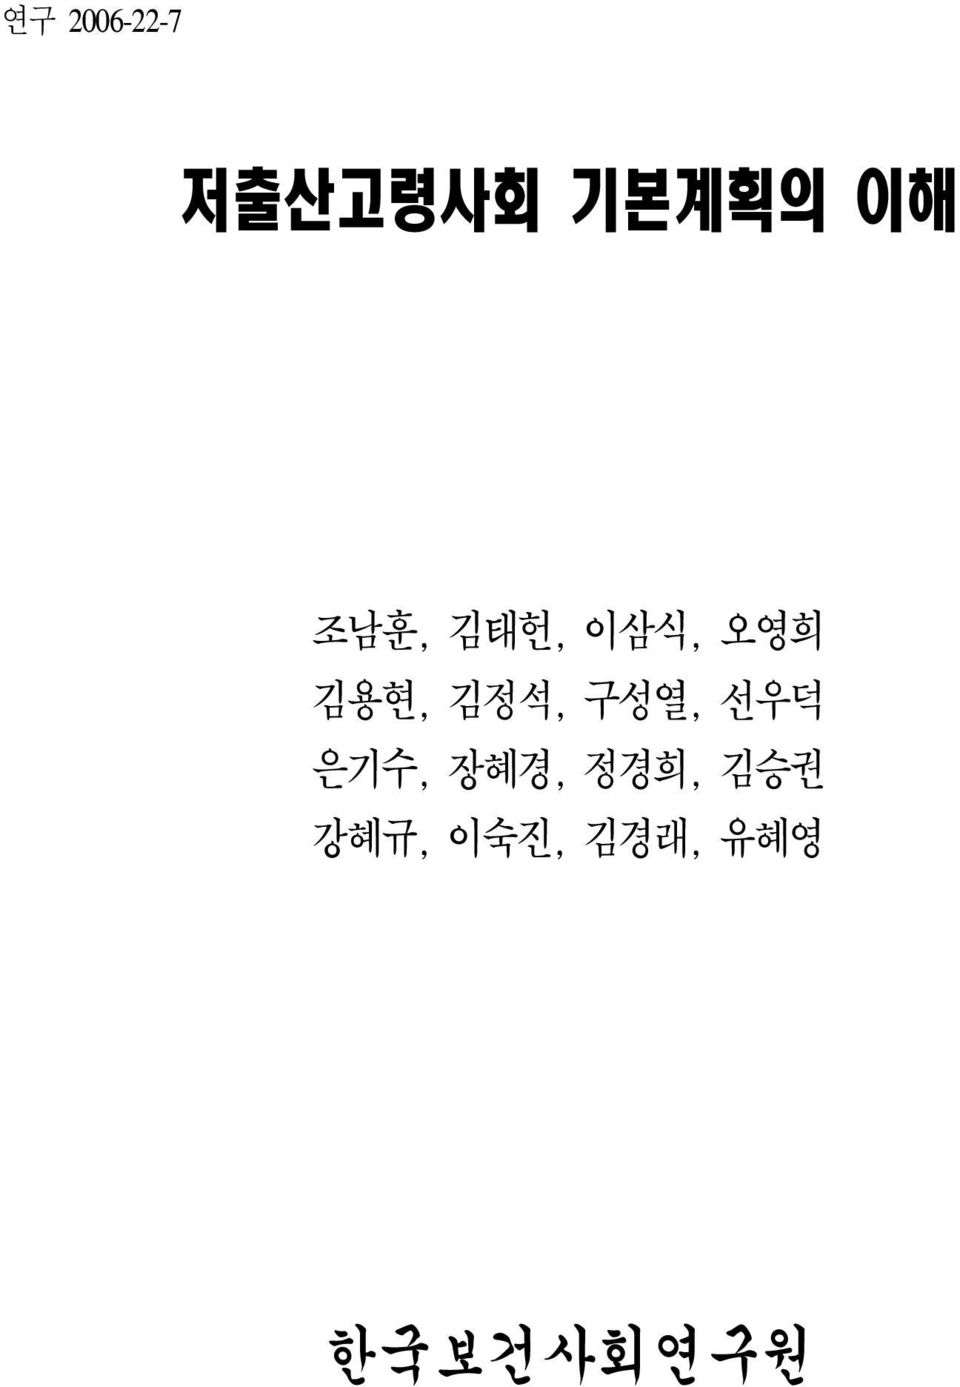 김정석, 구성열, 선우덕 은기수, 장혜경, 정경희,